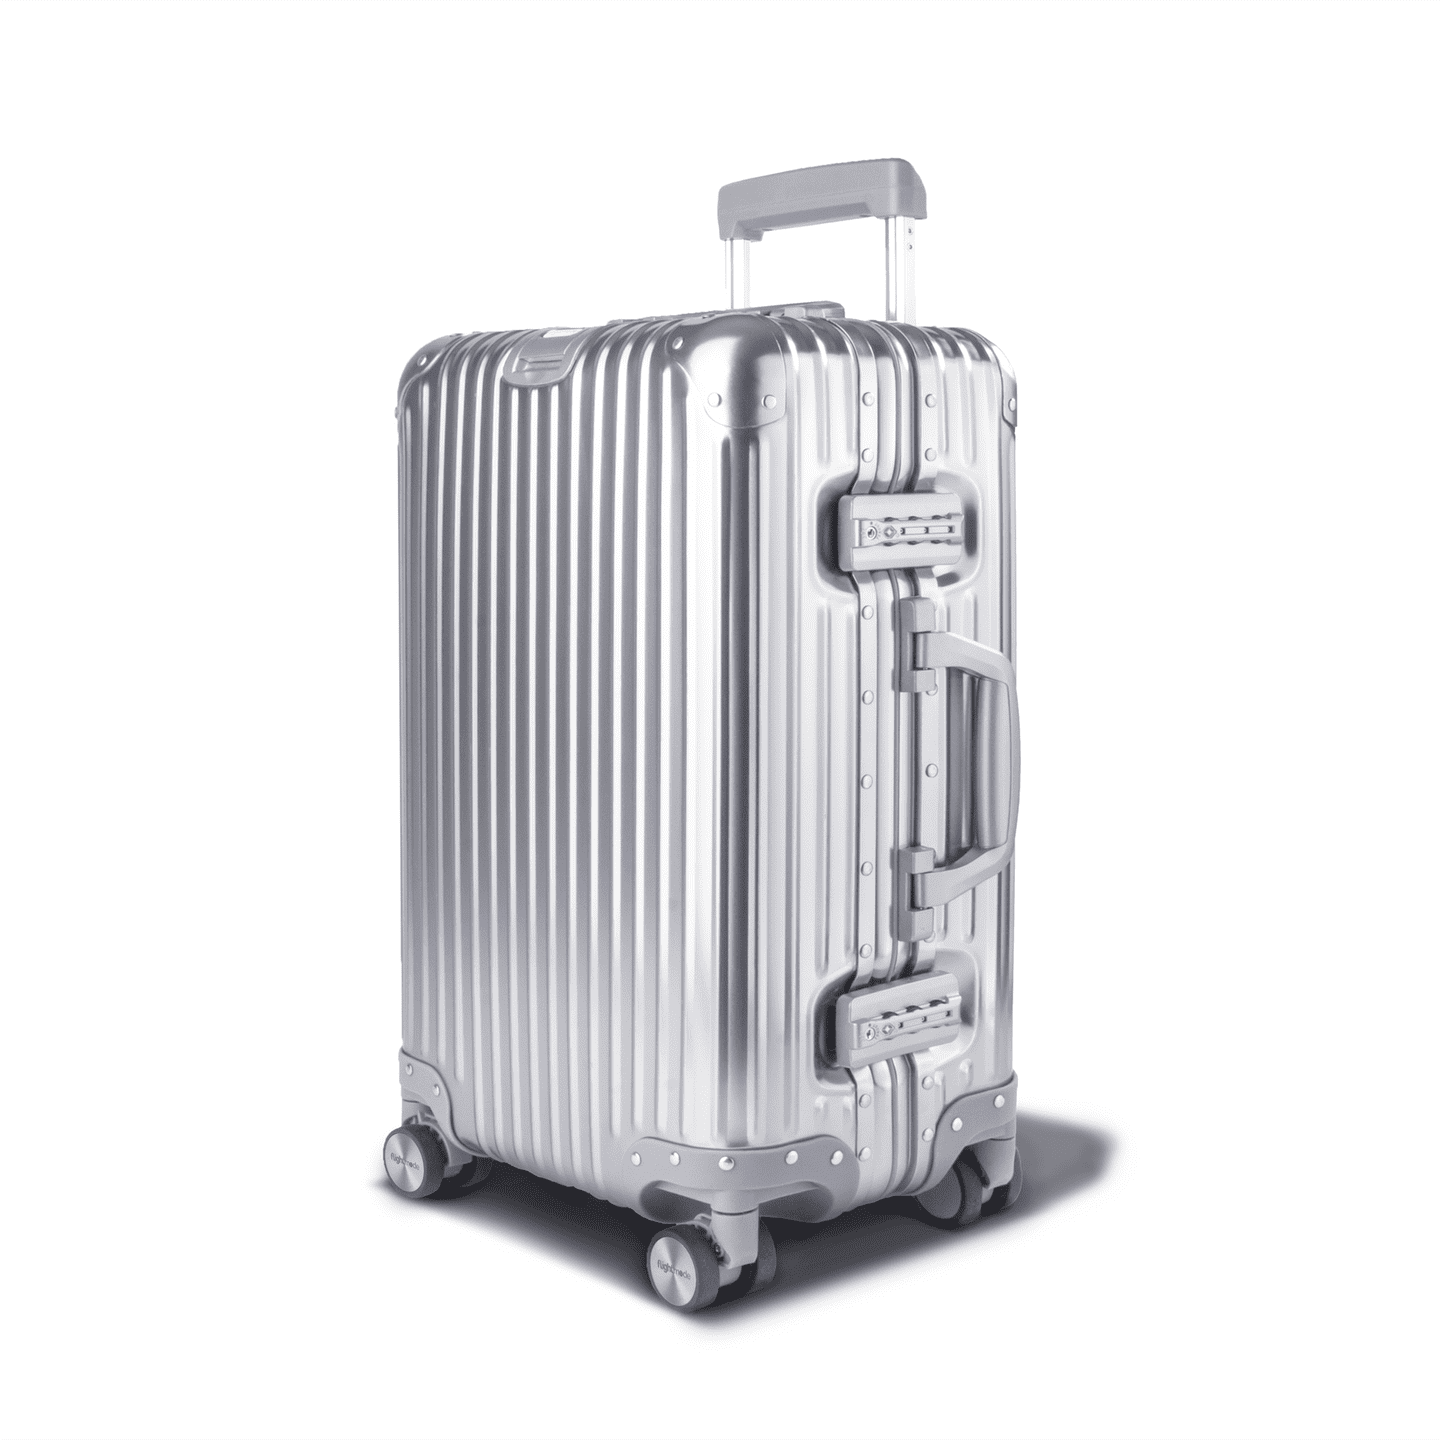 Flightmode Aluminium Suitcase Luggage CABIN - Silver